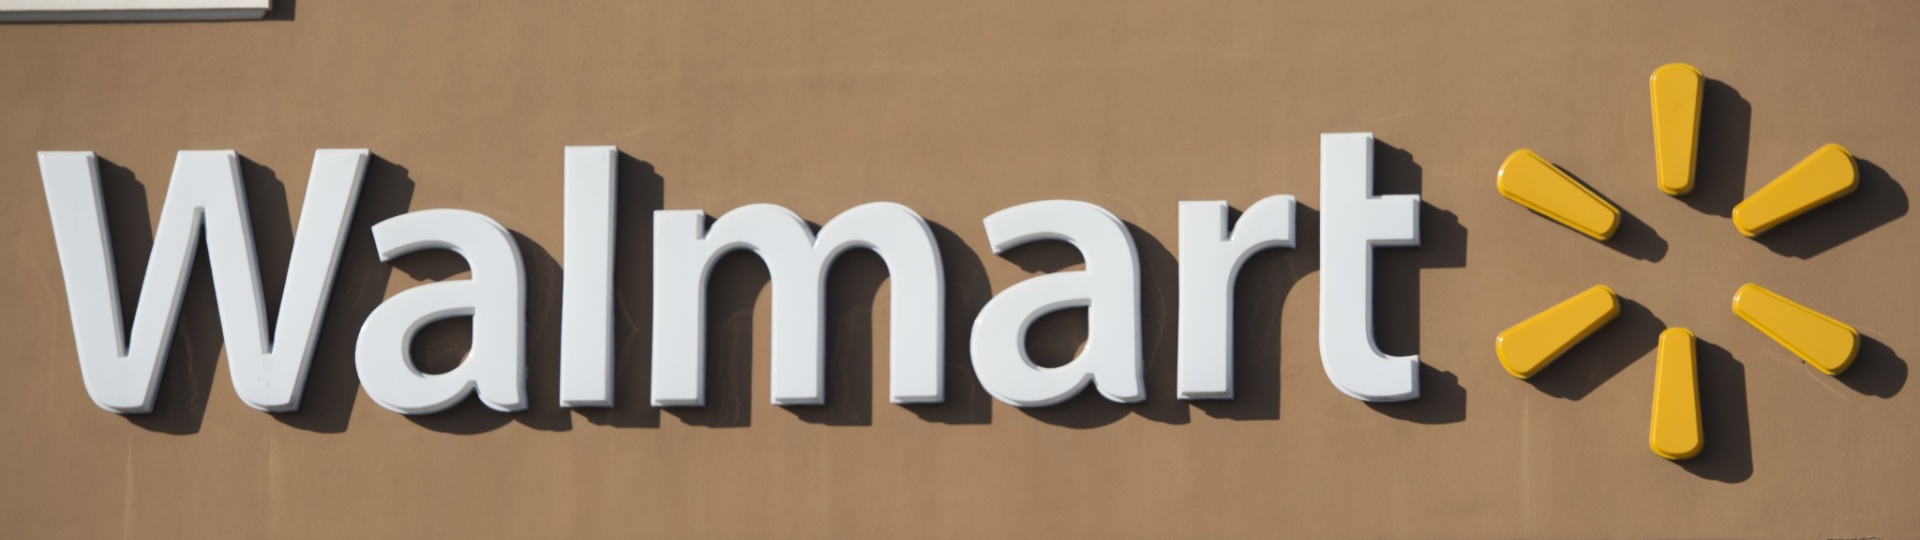 Walmart muda de nome no Brasil e prevê investimento de R$ 1,2 bi